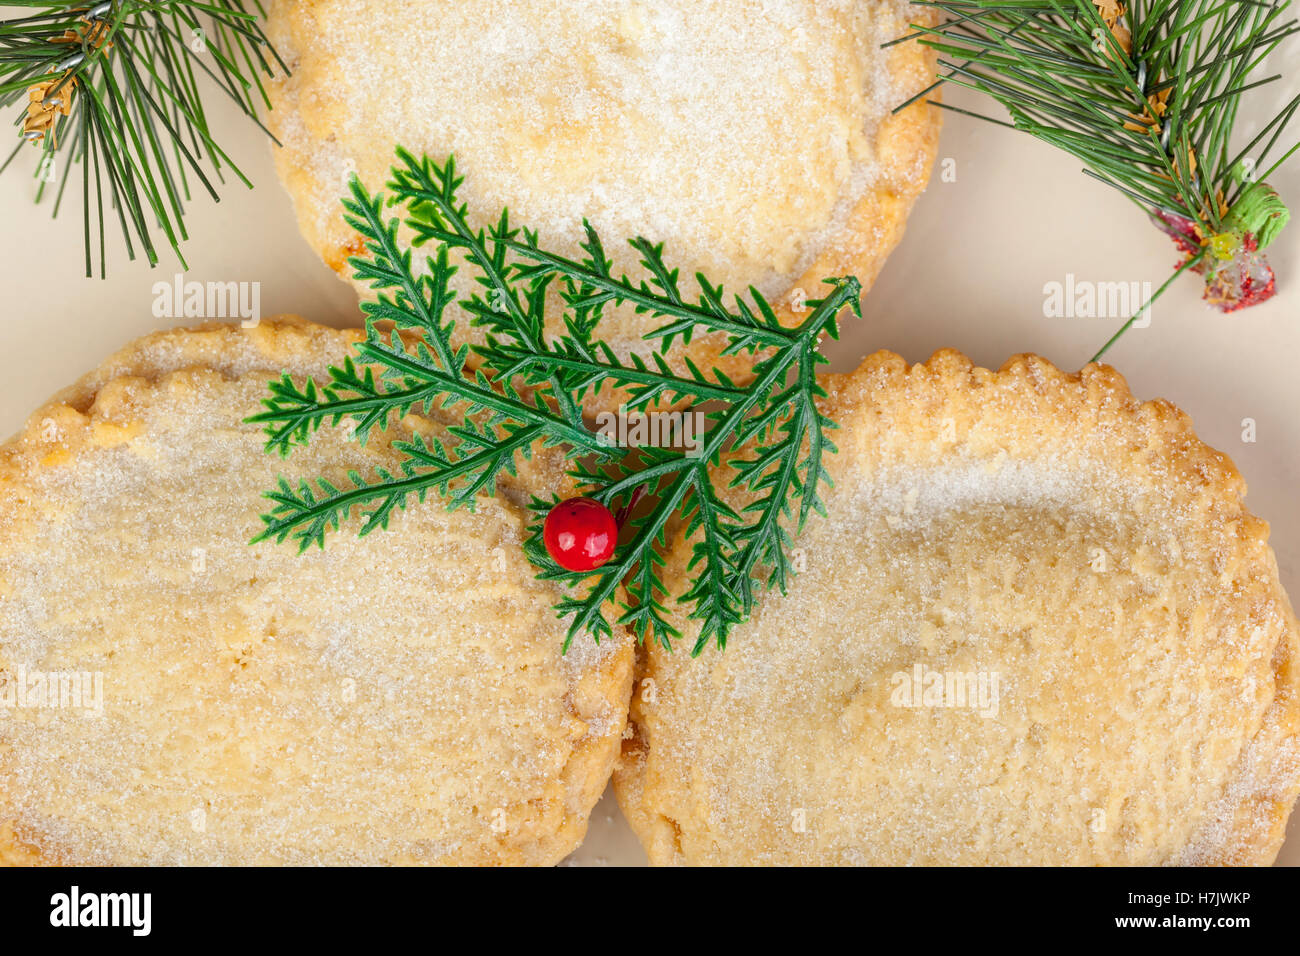 Tourné au-dessus de trois petits pâtés fraîchement cuits sur une assiette pour Noël Banque D'Images